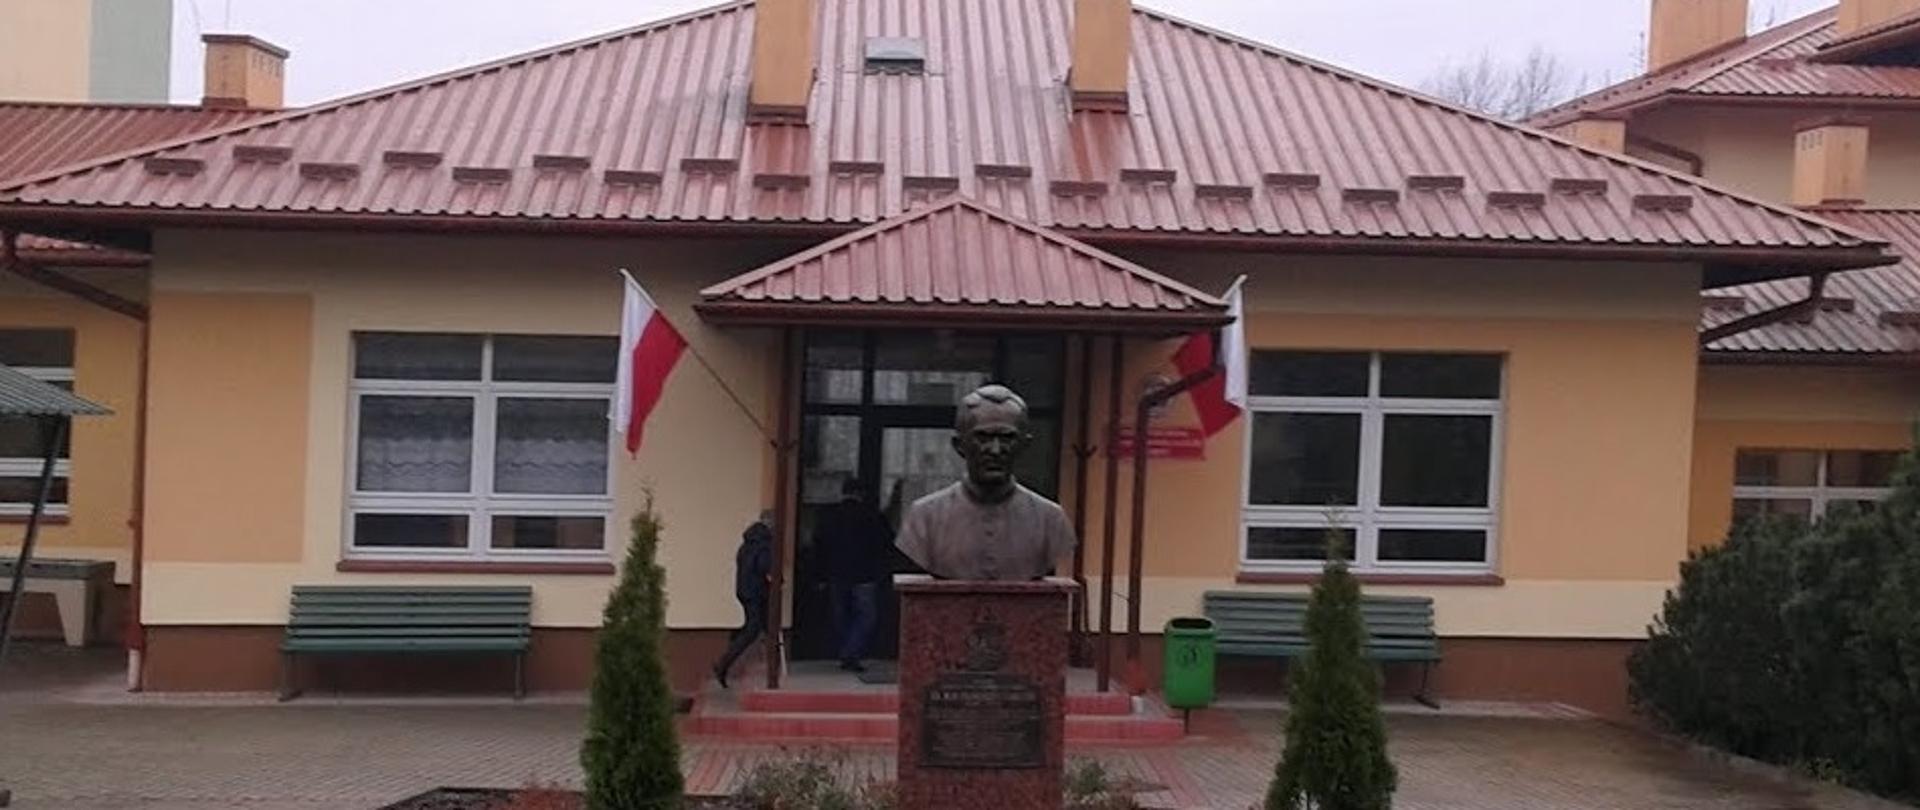 widok na pomnik patrona w tle wejście główne do szkoły wywieszone flagi państwowe obok pomnika i przed nim widoczna kostka brukowa i nasadzenia